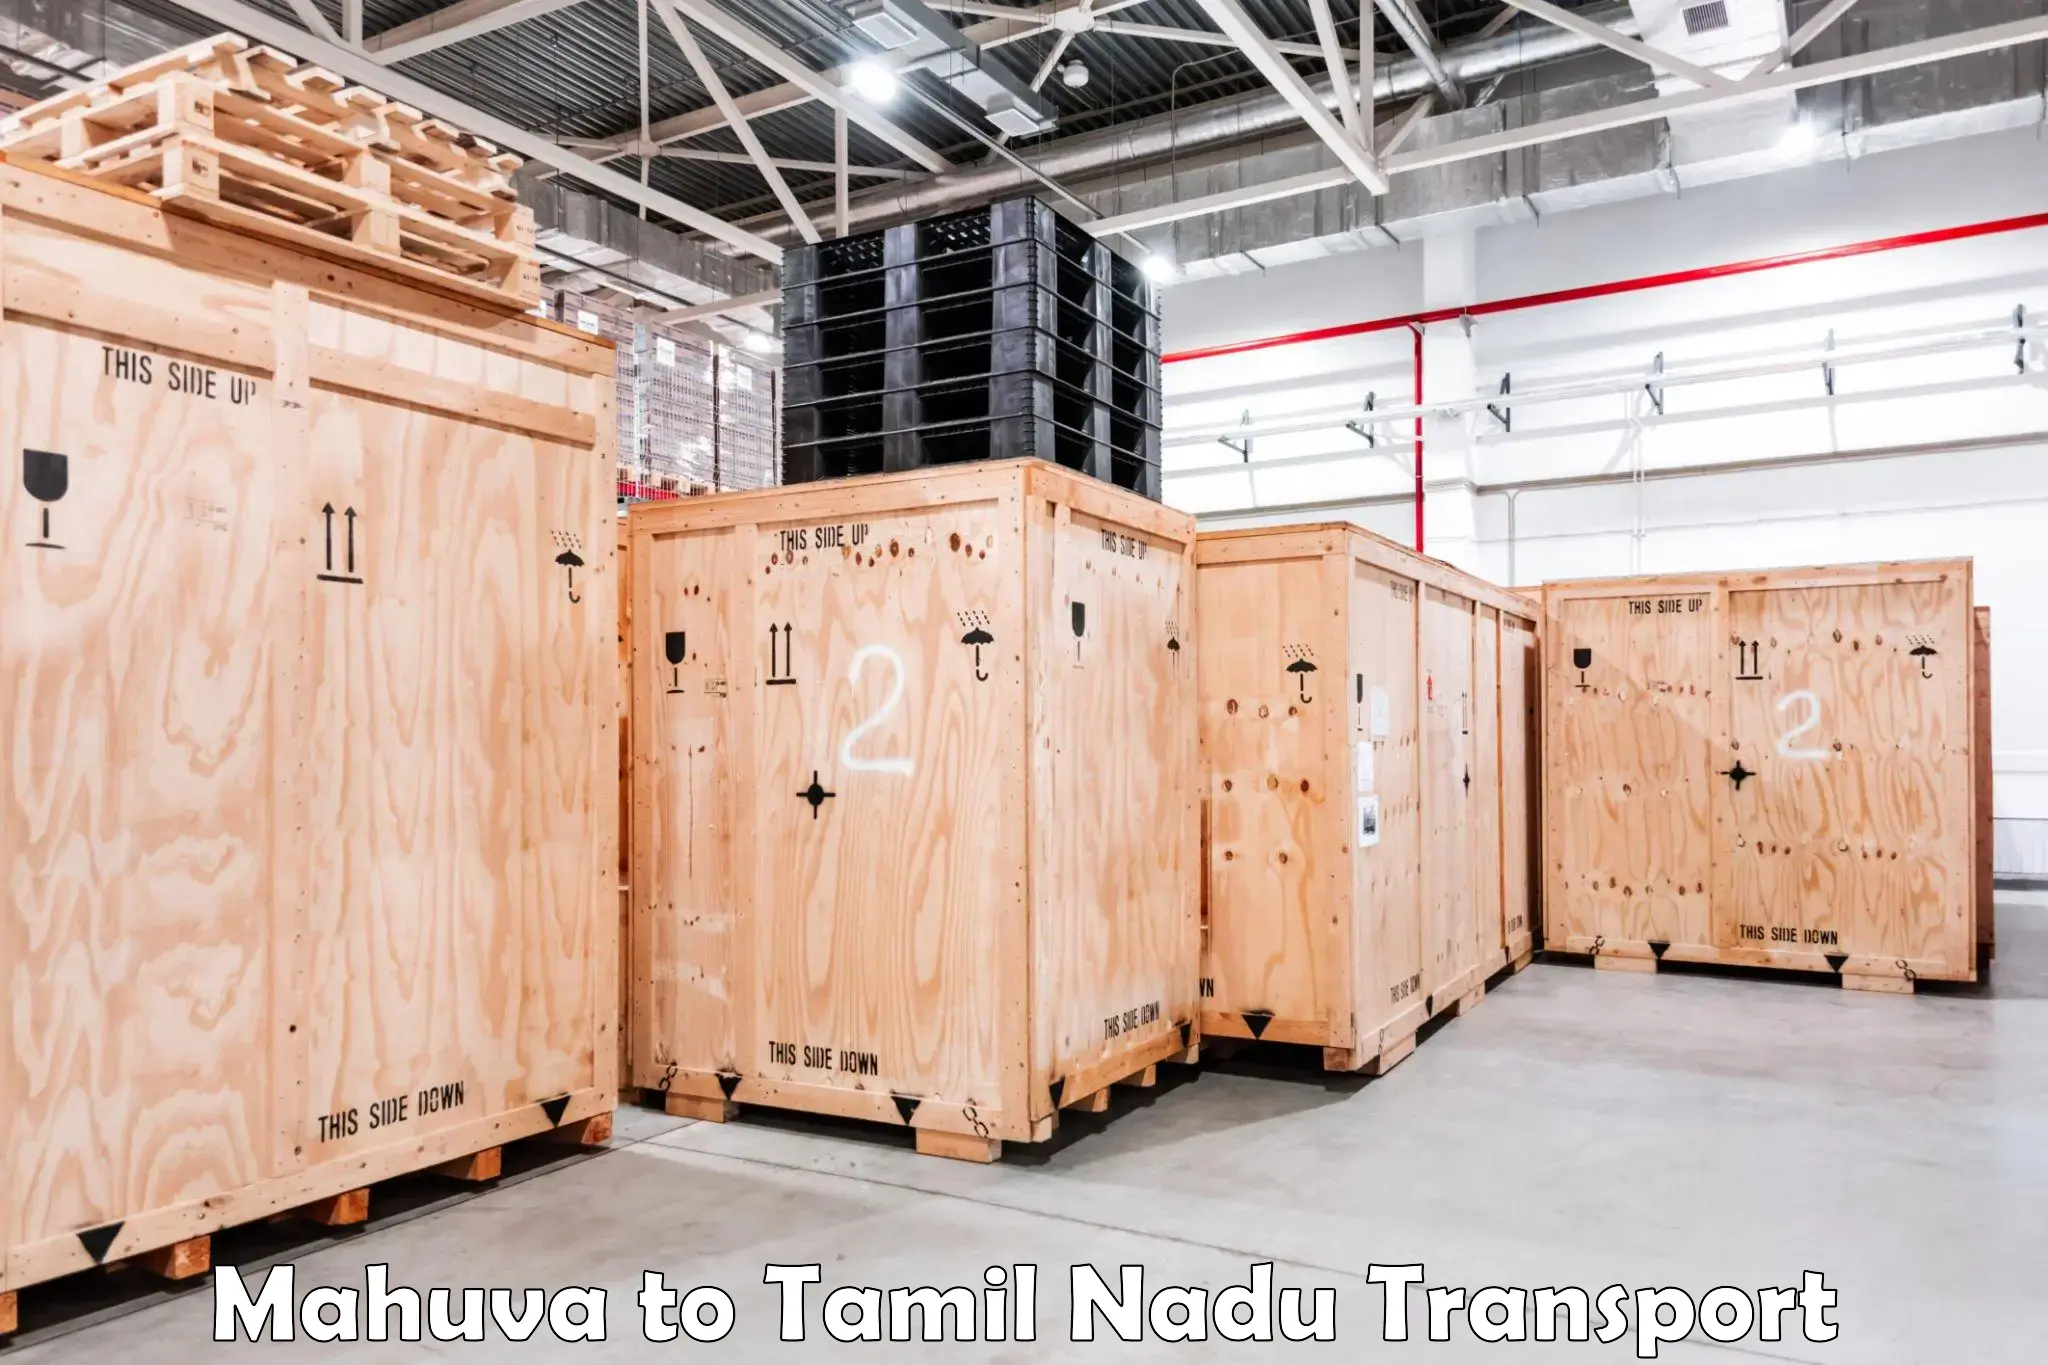 Daily transport service Mahuva to Tamil Nadu